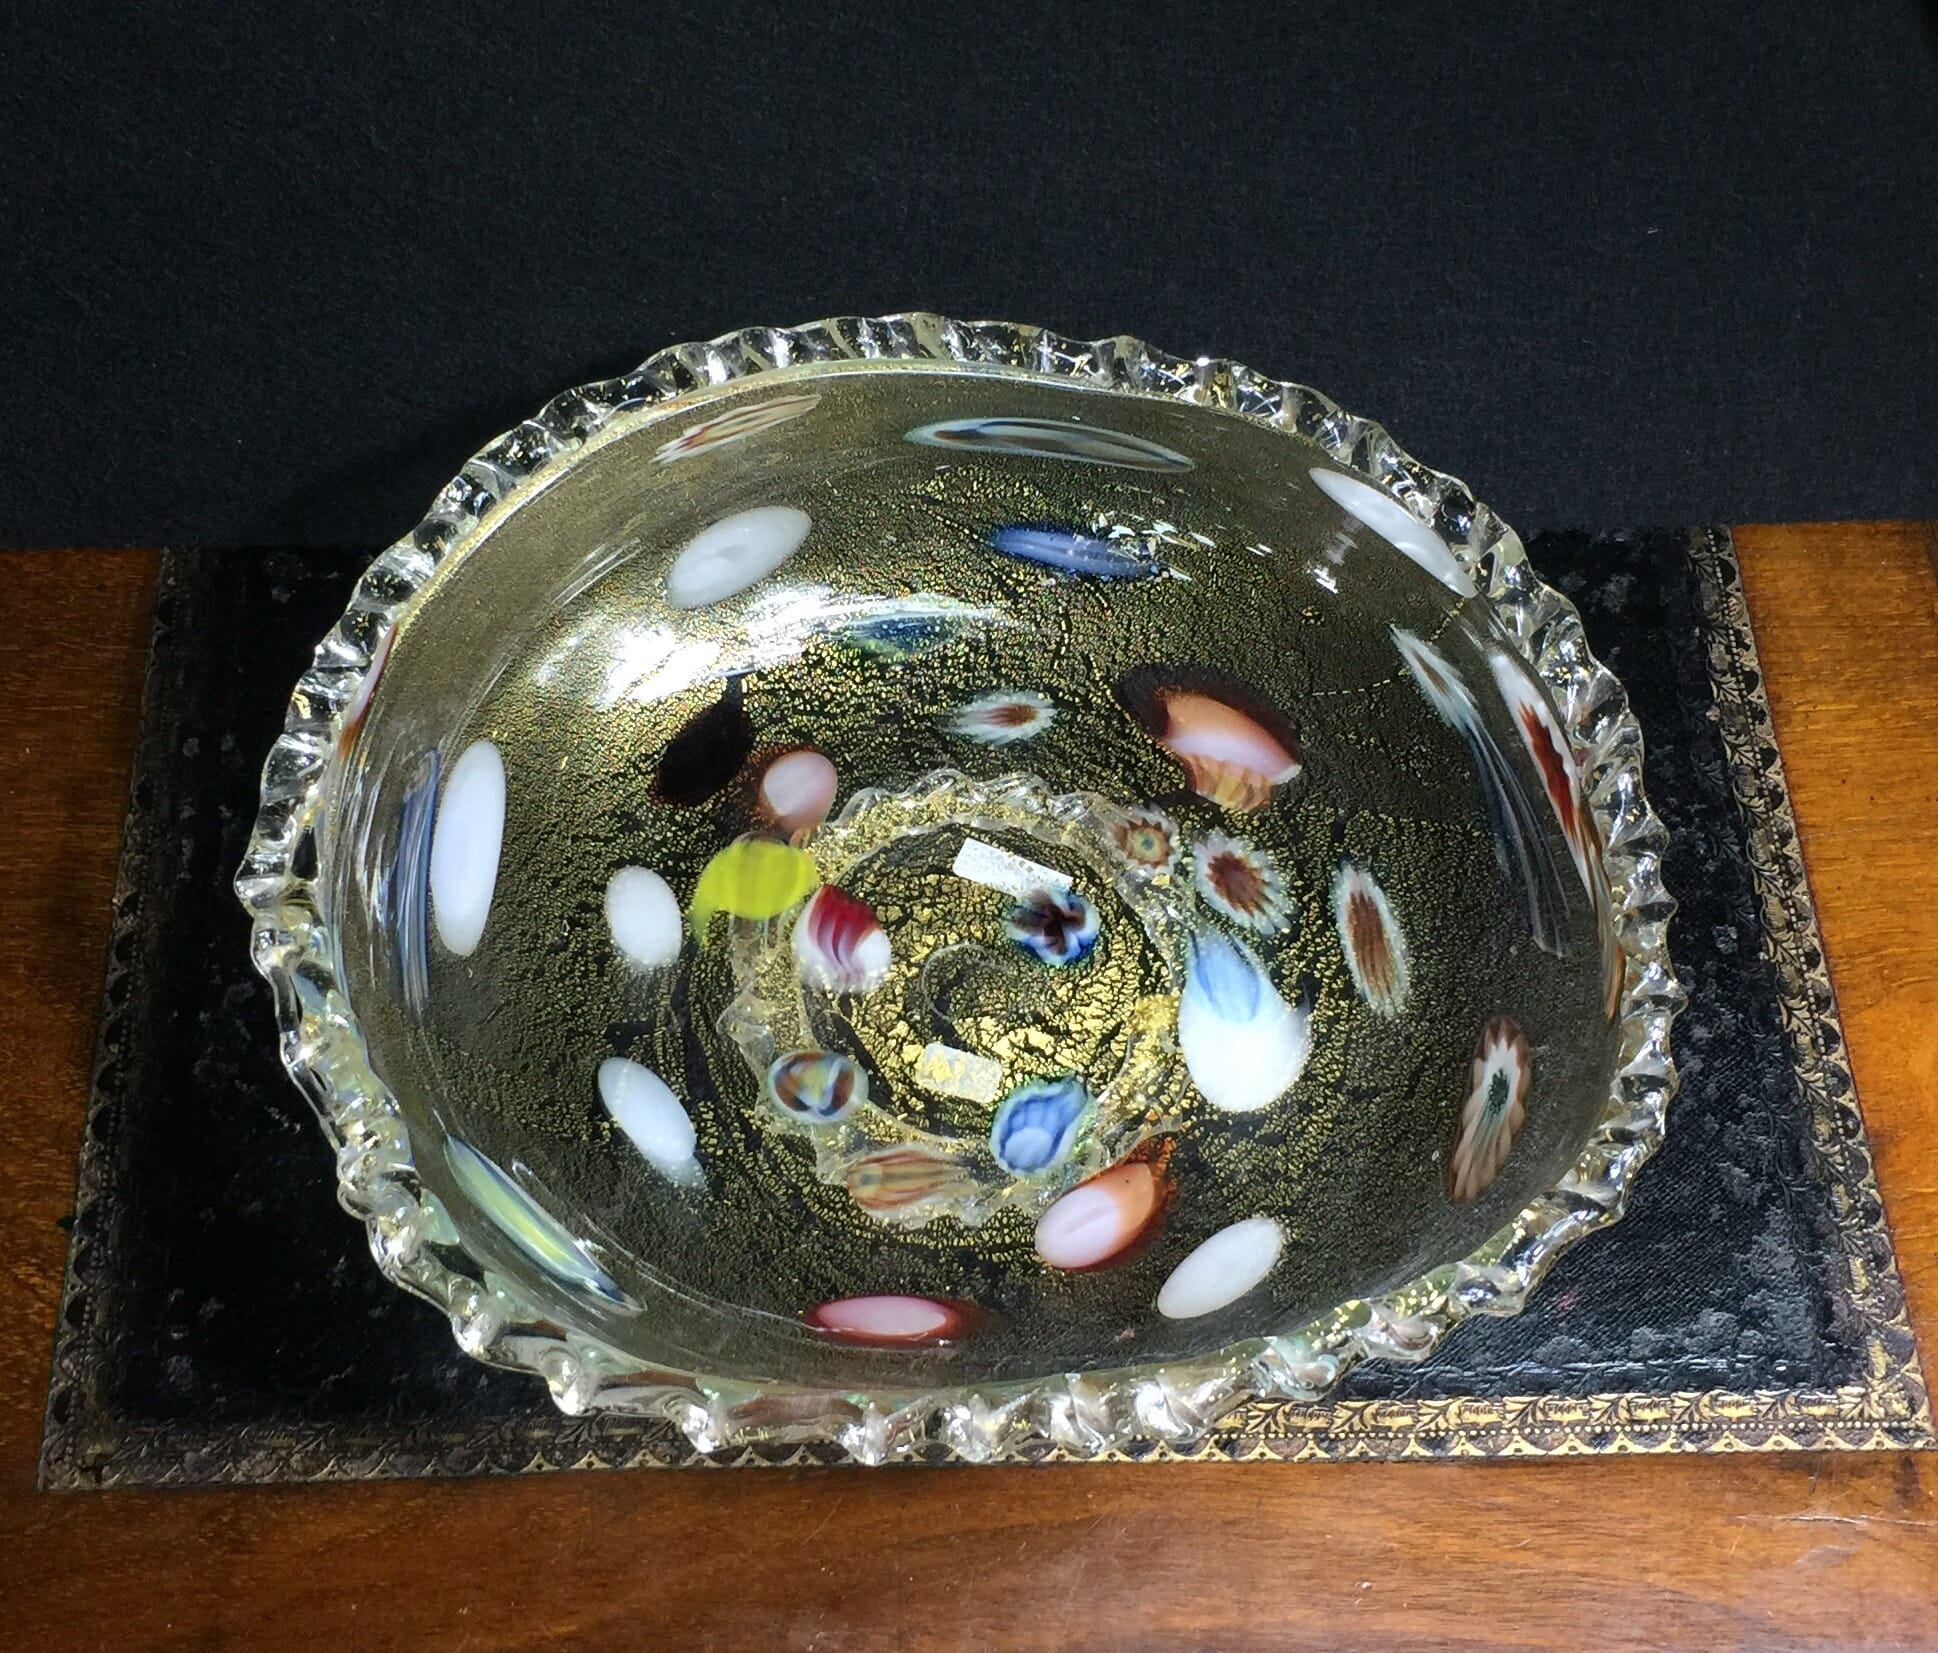 Italian Murano glass bowl -0